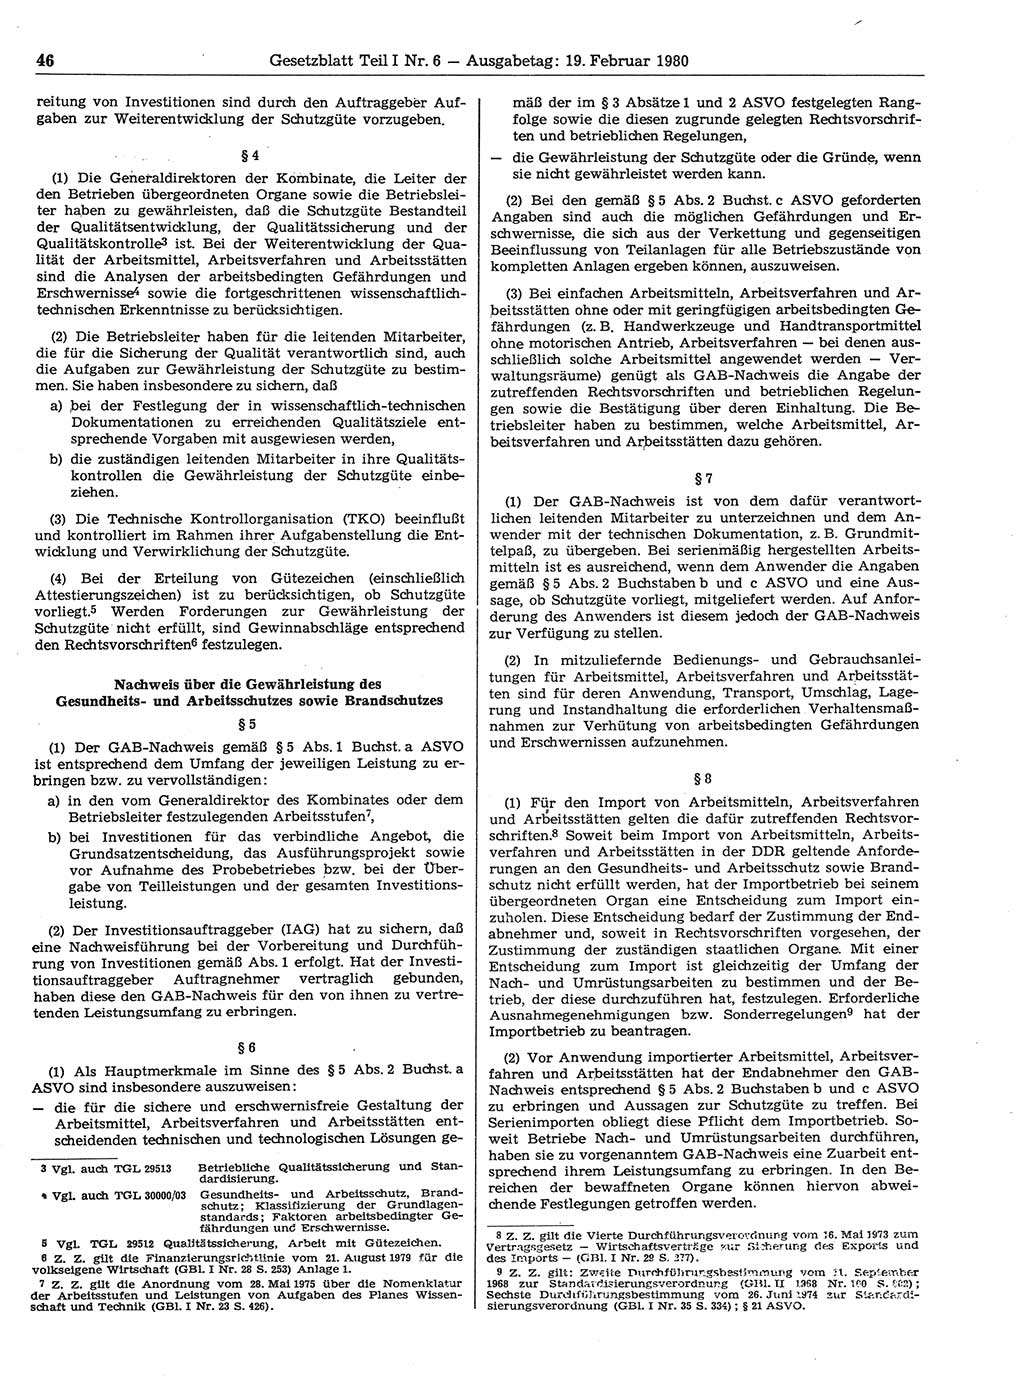 Gesetzblatt (GBl.) der Deutschen Demokratischen Republik (DDR) Teil Ⅰ 1980, Seite 46 (GBl. DDR Ⅰ 1980, S. 46)